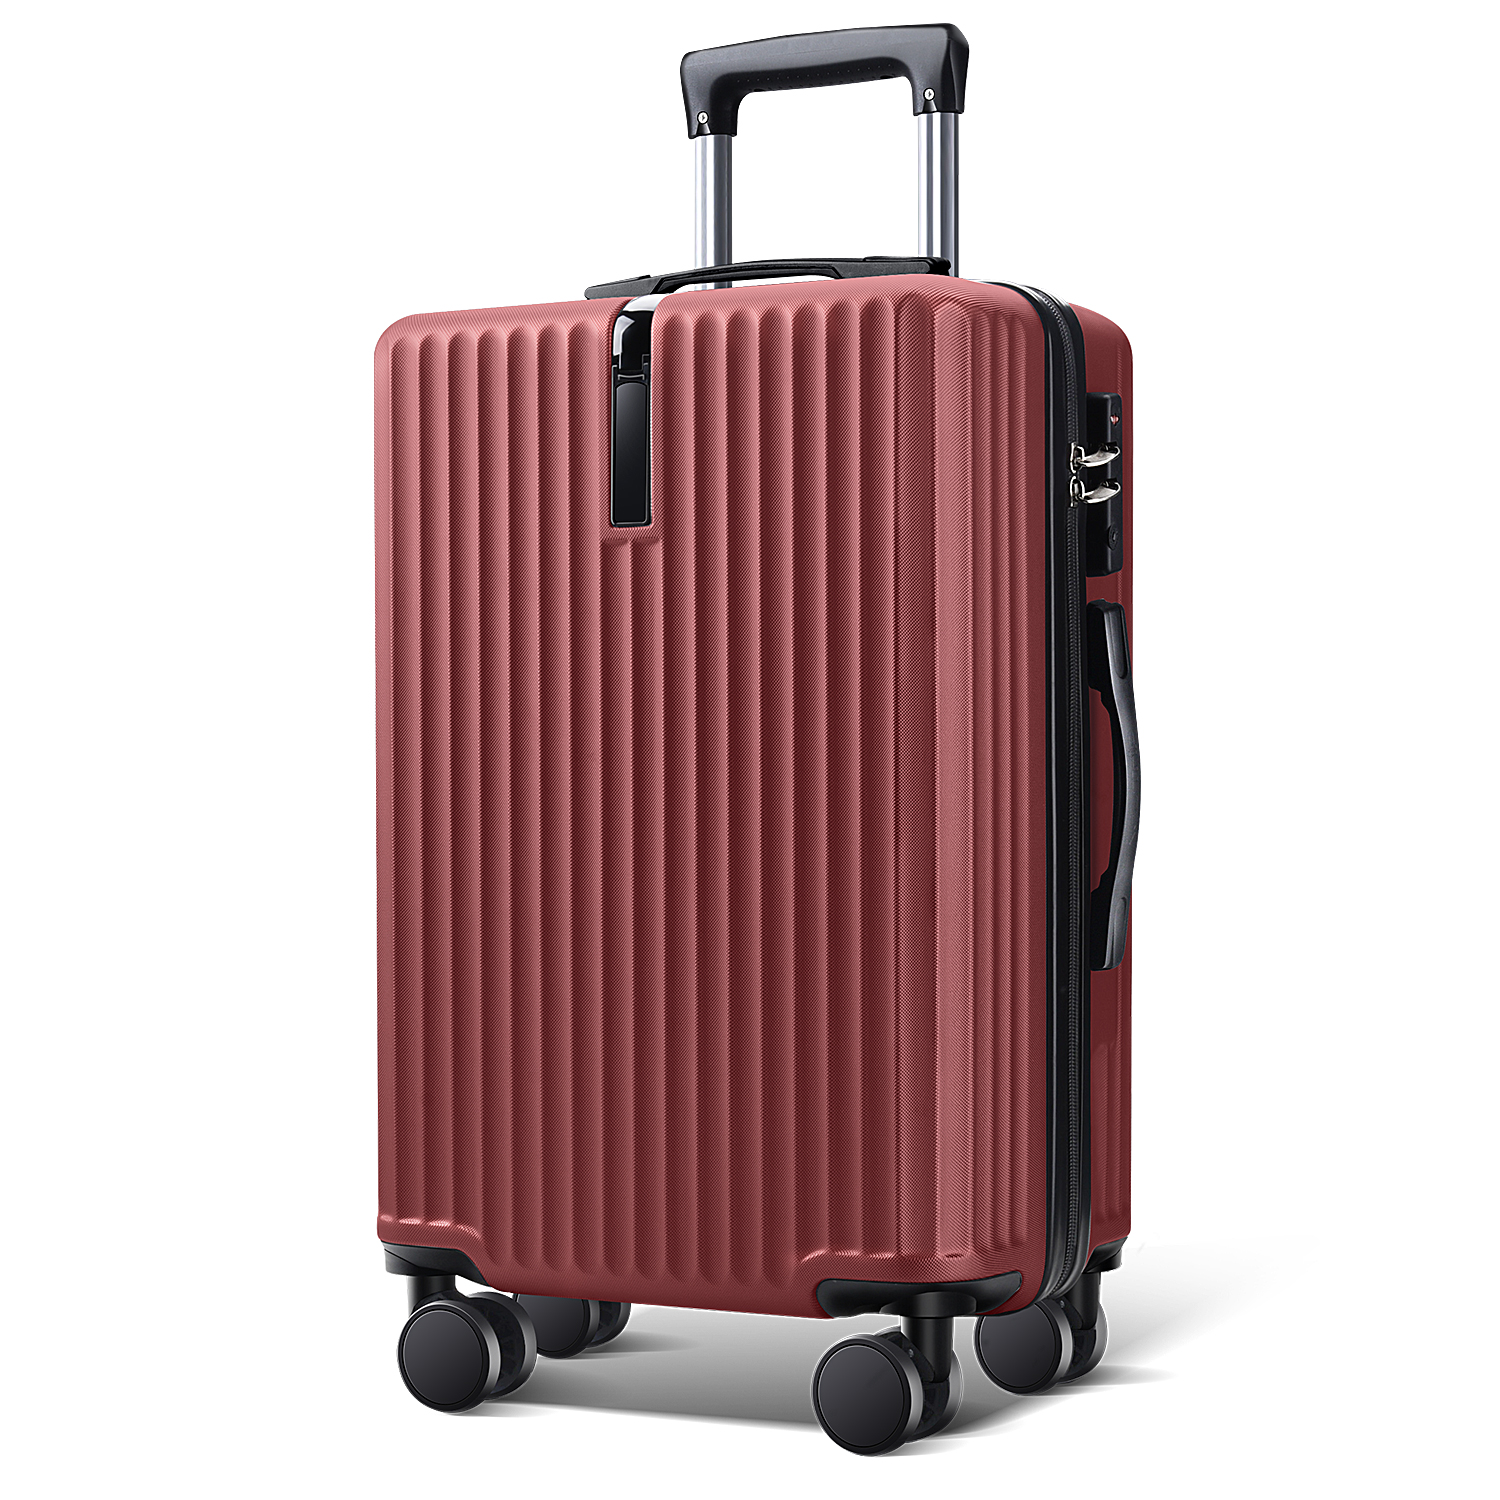 スーツケース 28インチ スーツケース キャリーケース キャリーバッグ 3カラー選ぶ S M Lサイズ 3-5日用 泊まる 軽量設計 大容量 海外旅行  GOTOトラベル 旅行